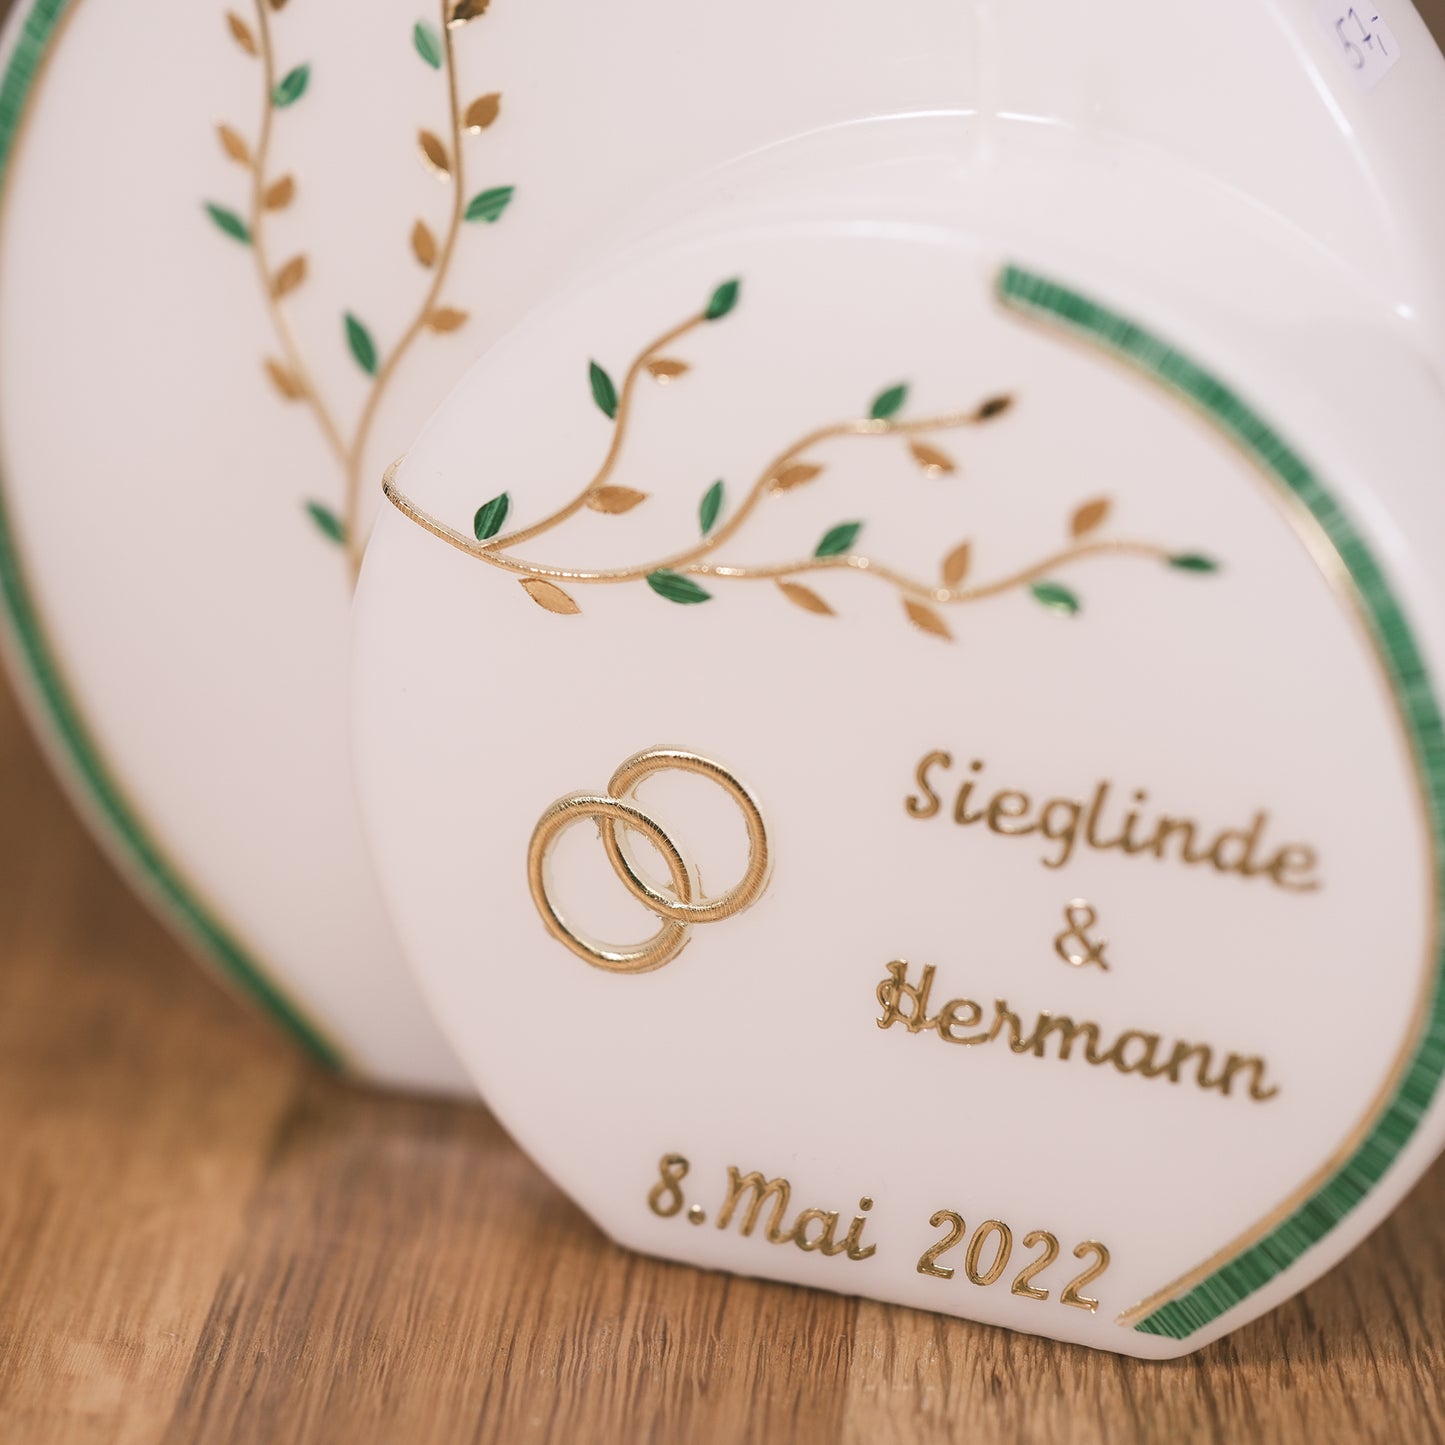 Hochzeitskerze "Sieglinde & Hermann"